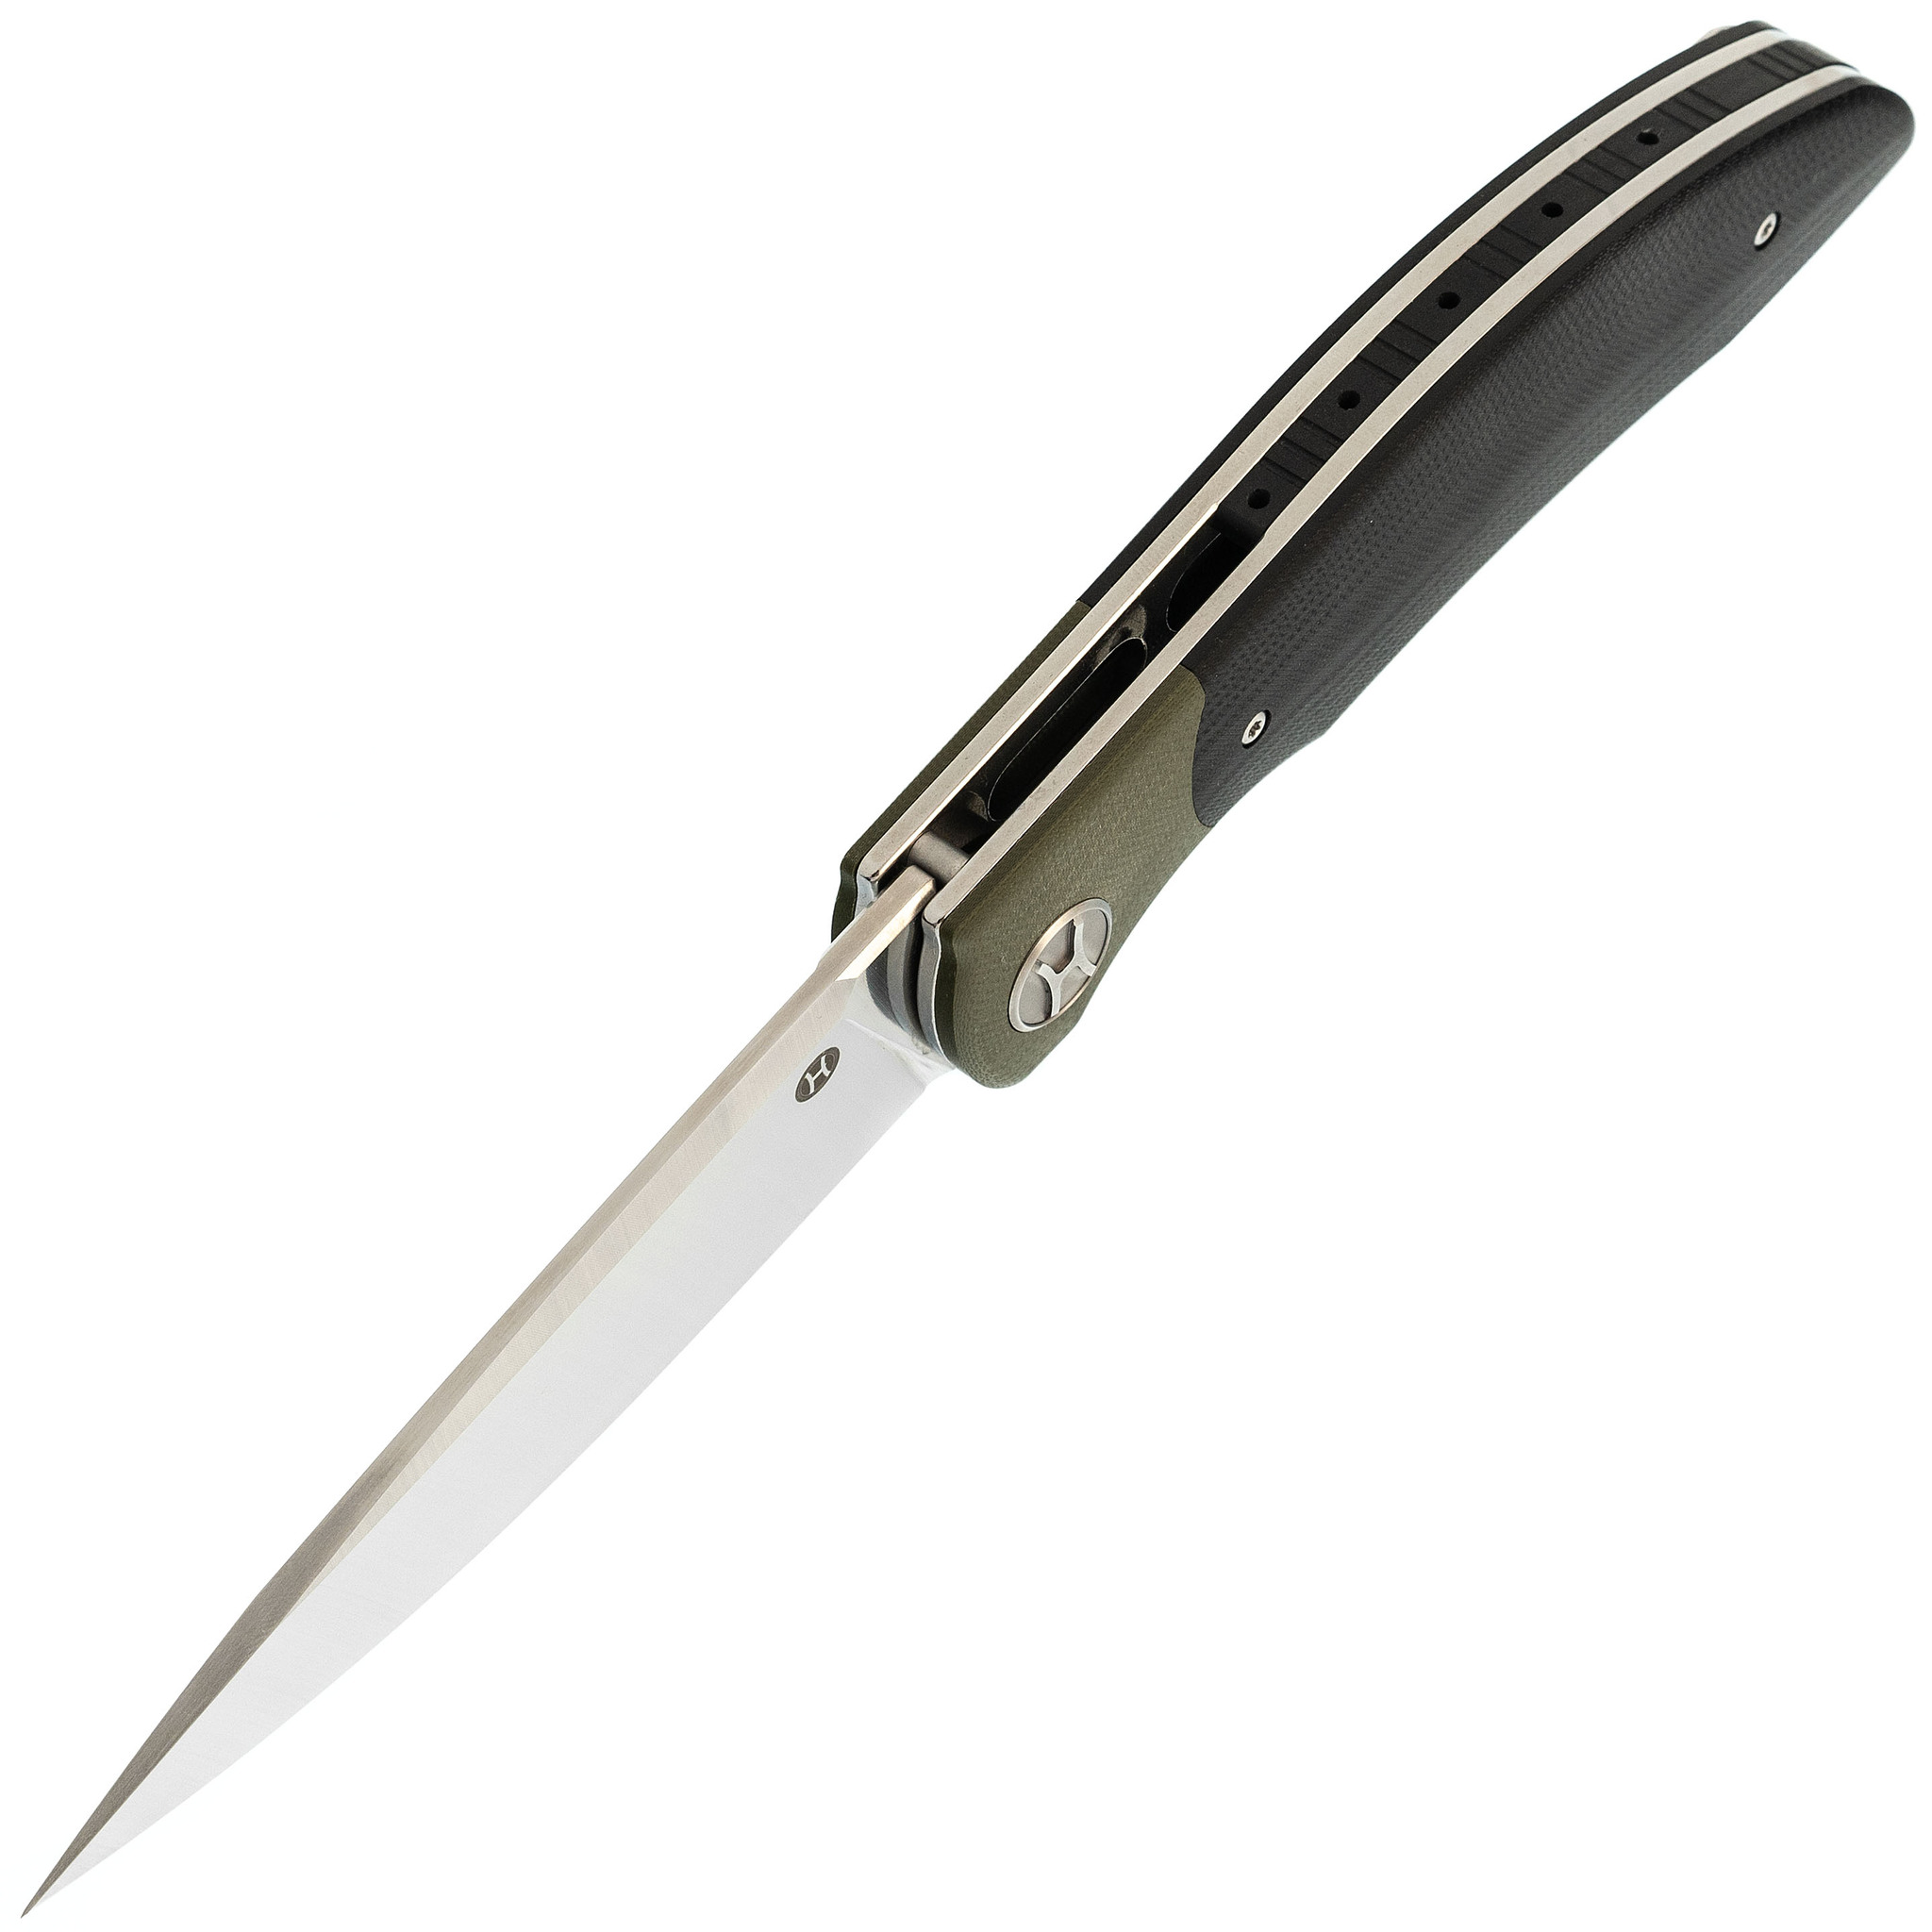 фото Большой складной нож honor tirex black, сталь d2, рукоять g10